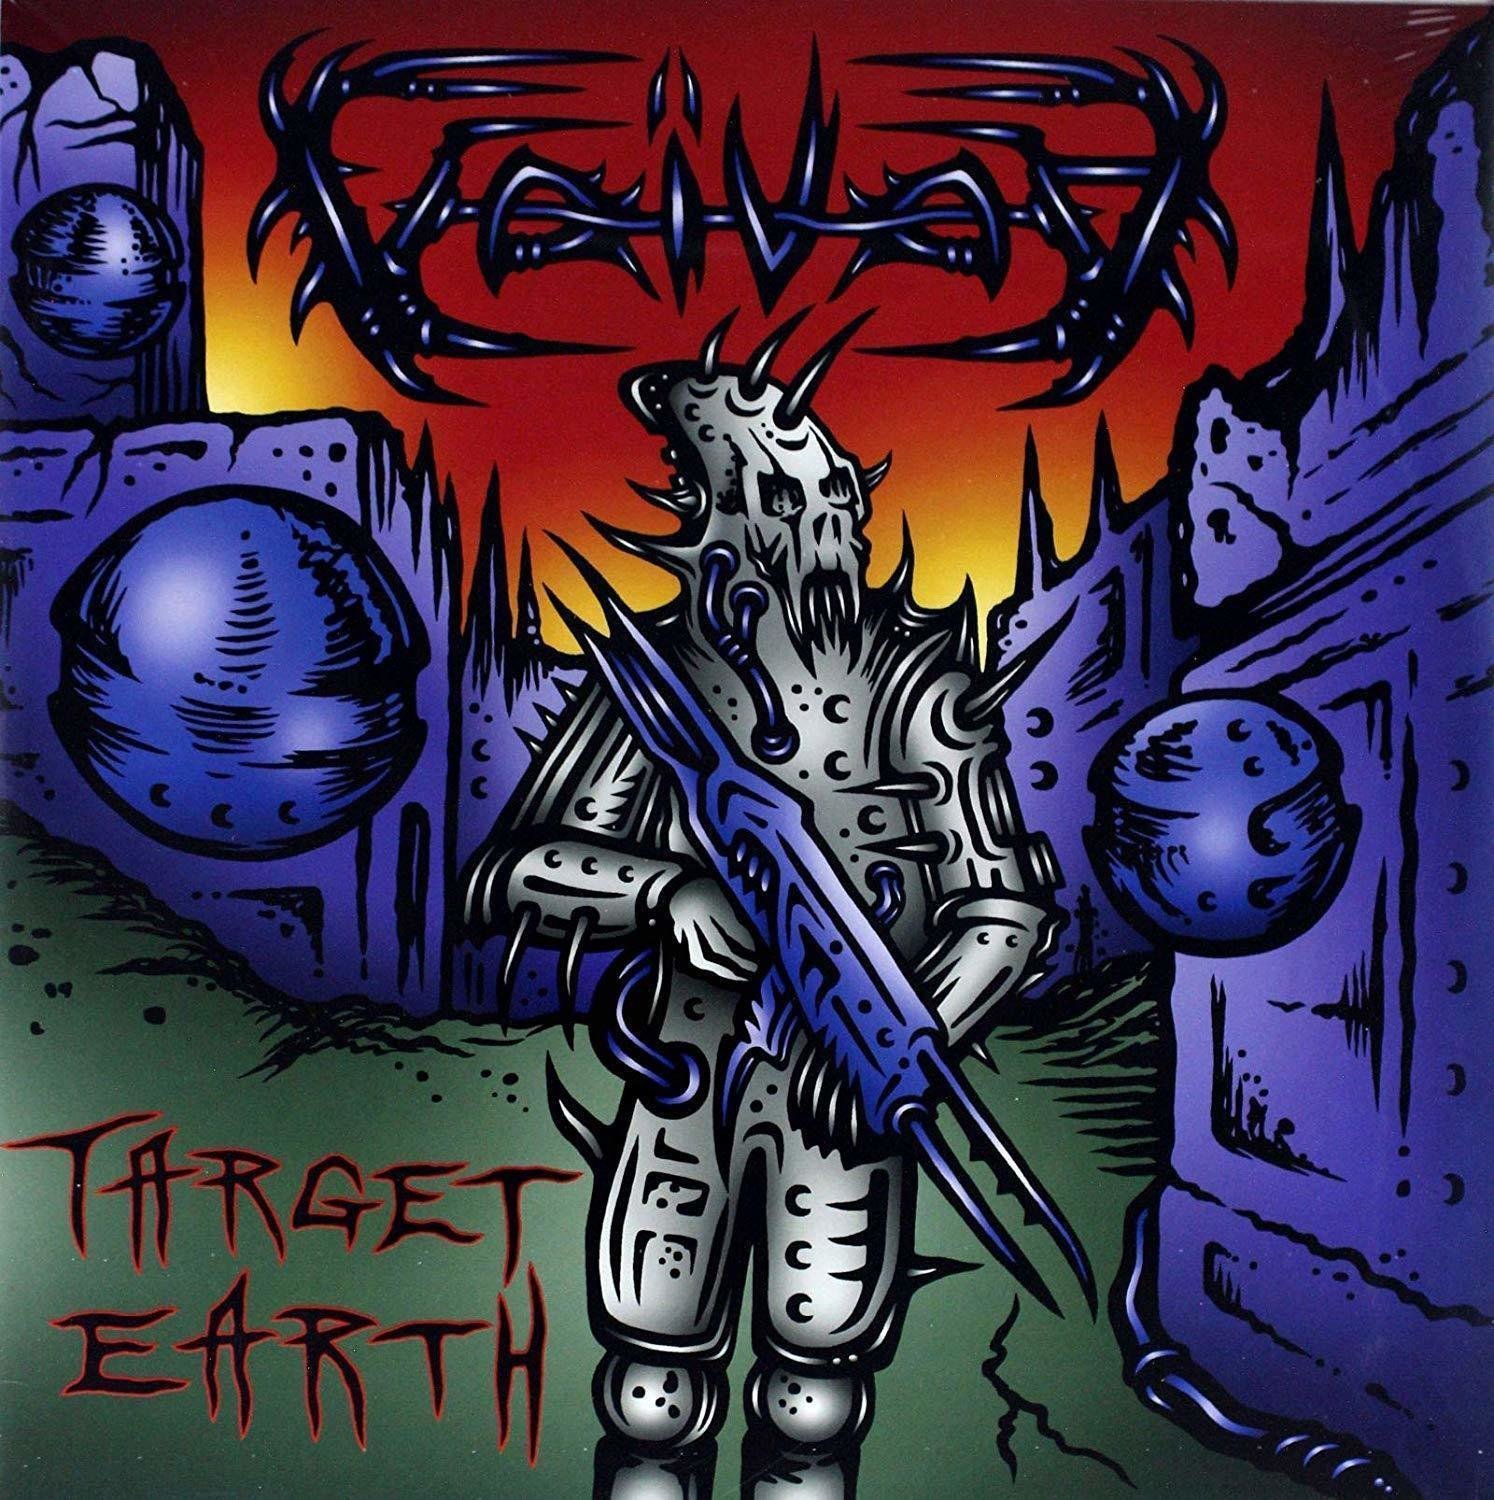 Schallplatte Voivod - Target Earth (Picture Disc) (2 LP)